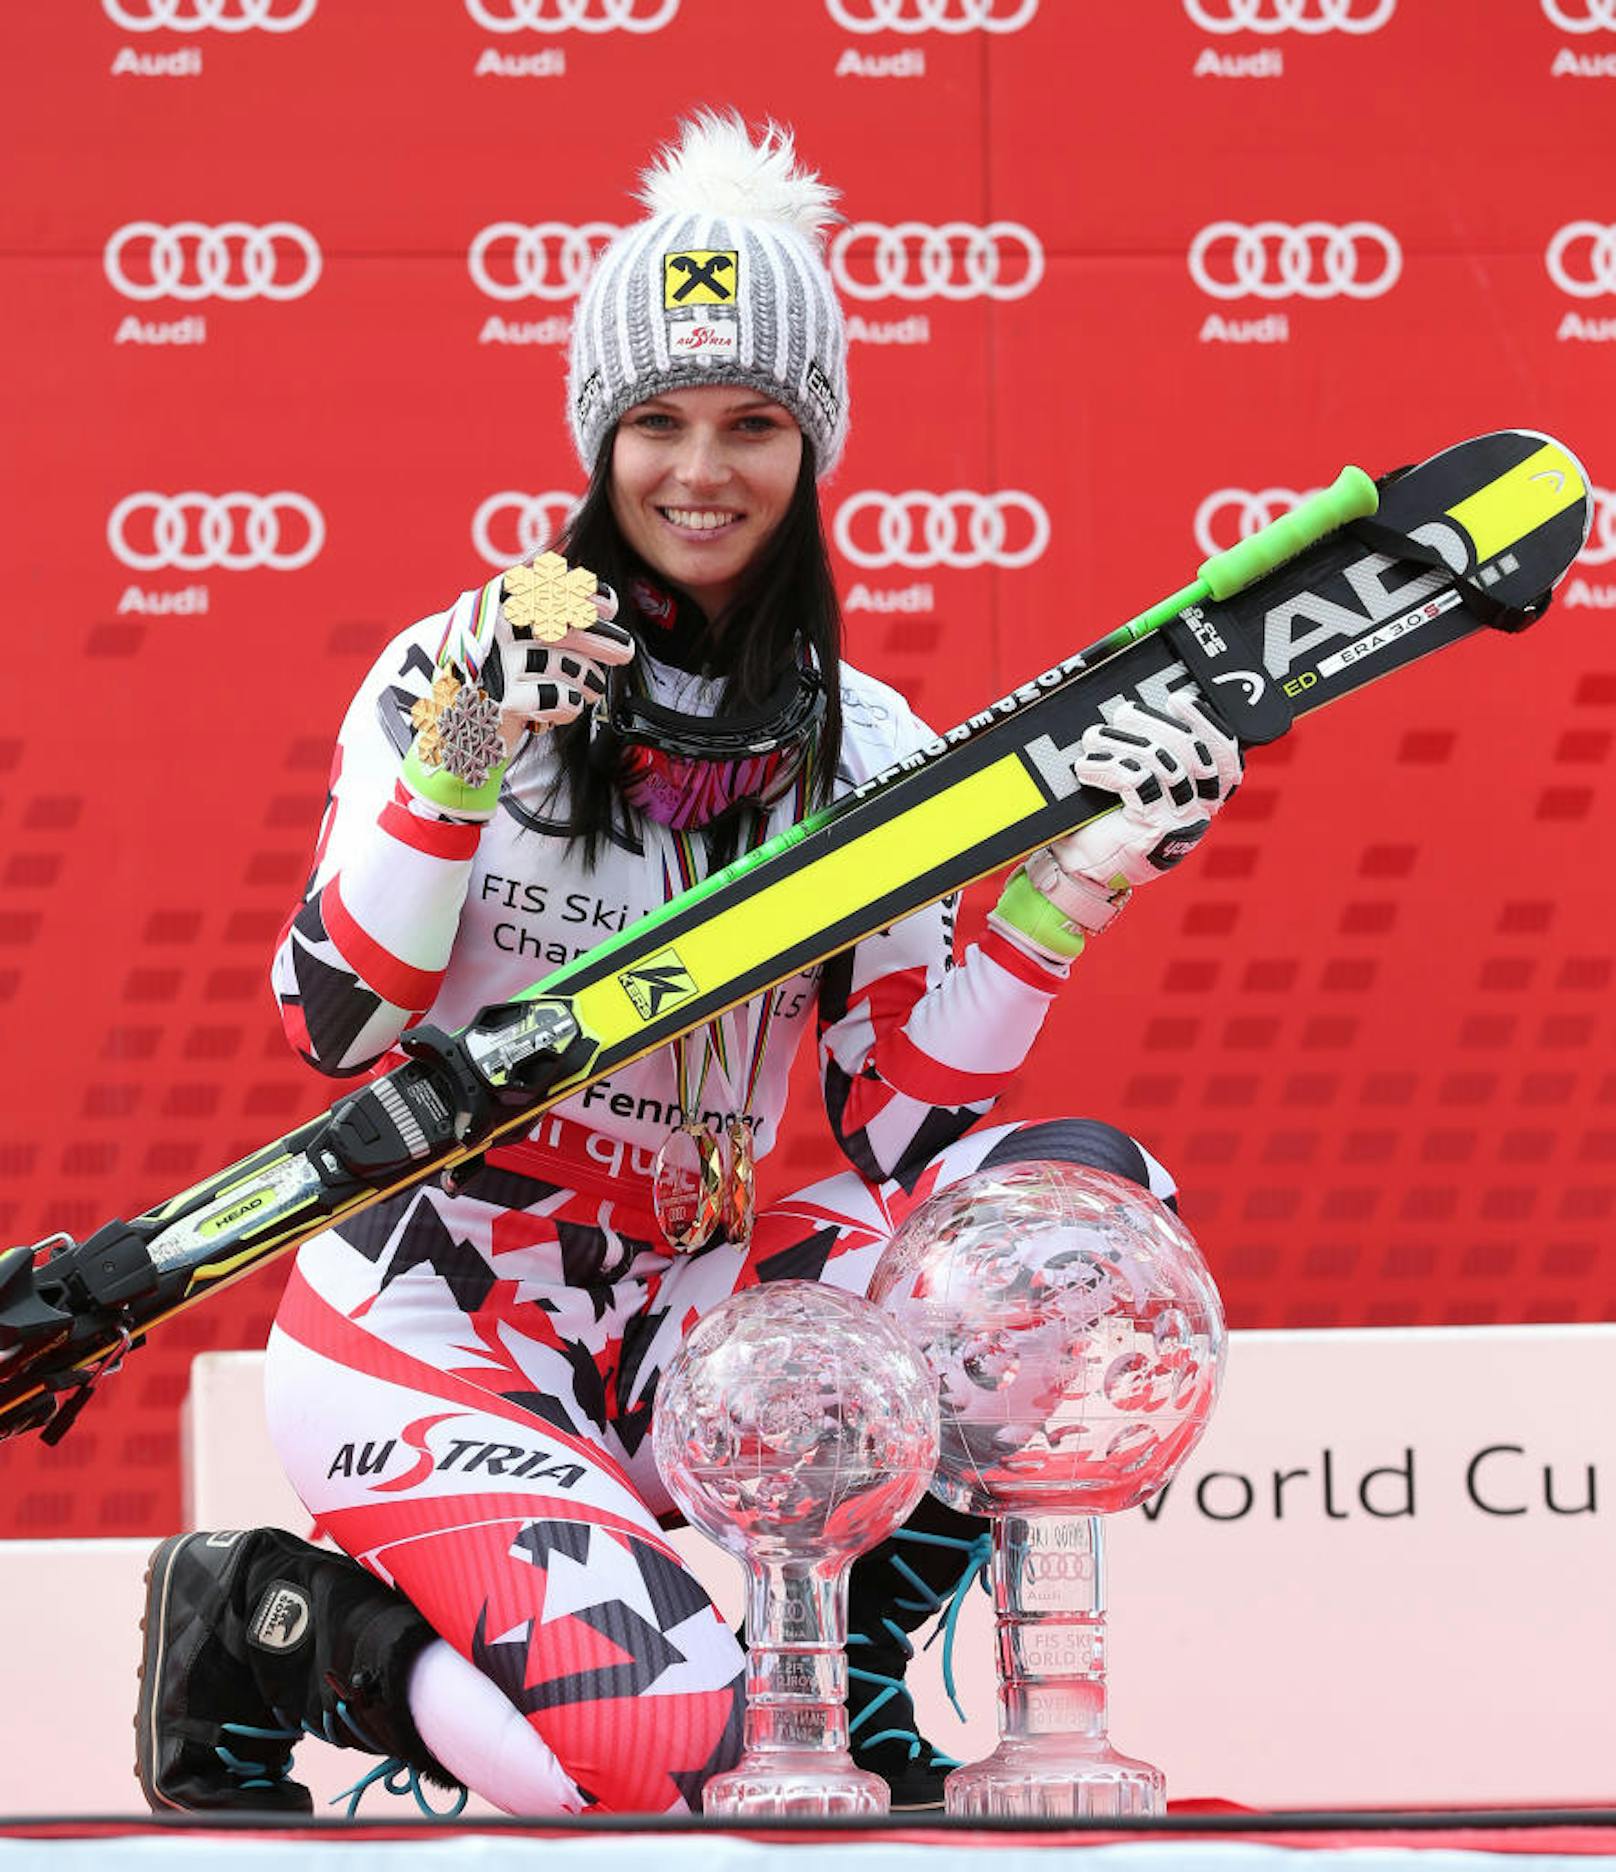 Mit dem besseren Ende für Fenninger. Die Ski-Queen verteidigte ihren Sieg im Gesamtweltcup. 22 Punkte lag sie am Ende vor Maze. Auch die Riesentorlauf-Kugel ging erneut an die Österreicherin.